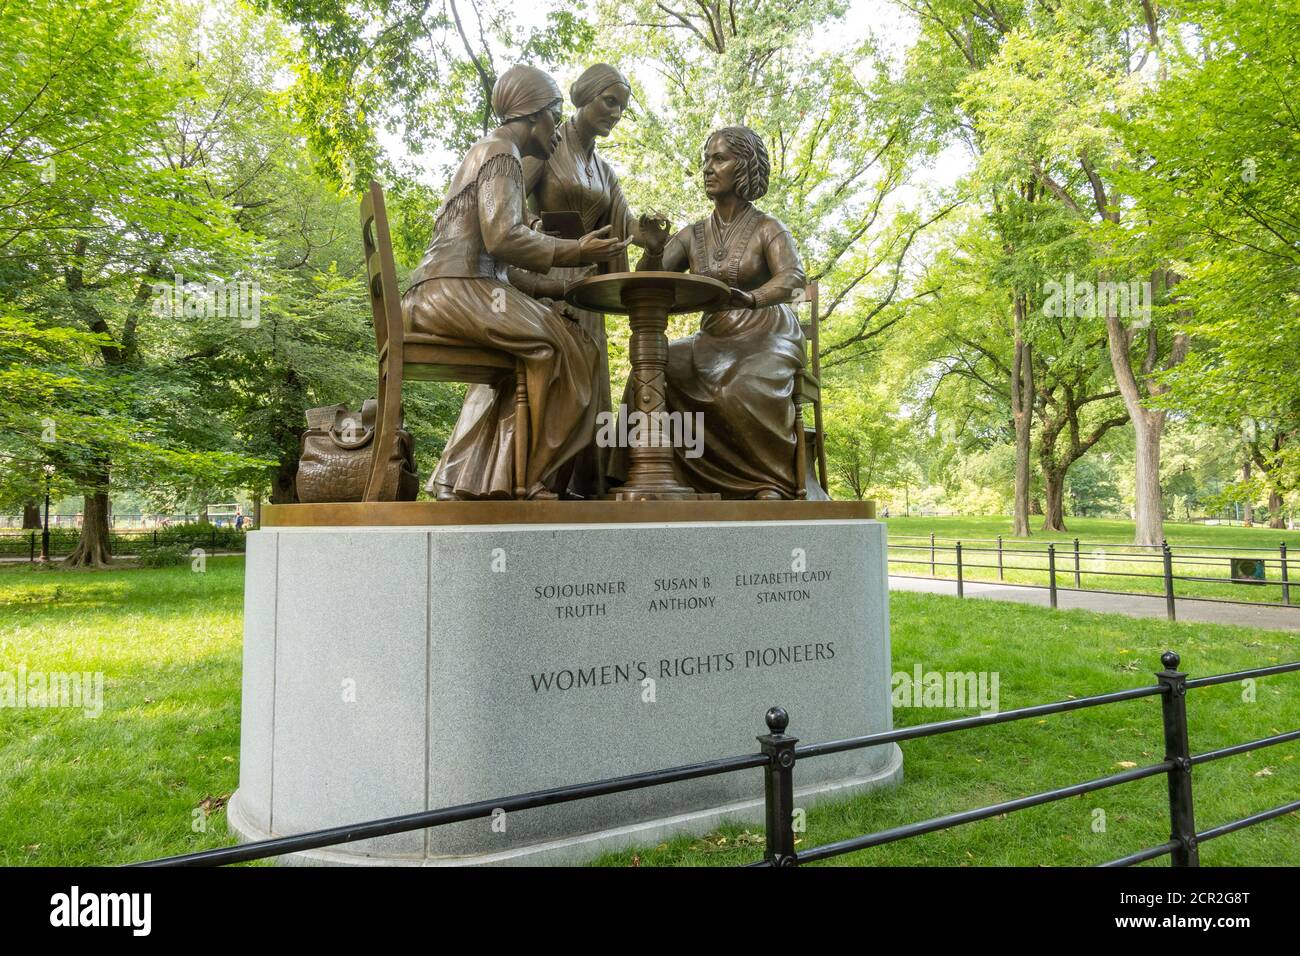 Das Denkmal für die Pionierinnen der Frauen befindet sich auf dem Literary Walk im Central Park, New York City, USA Stockfoto